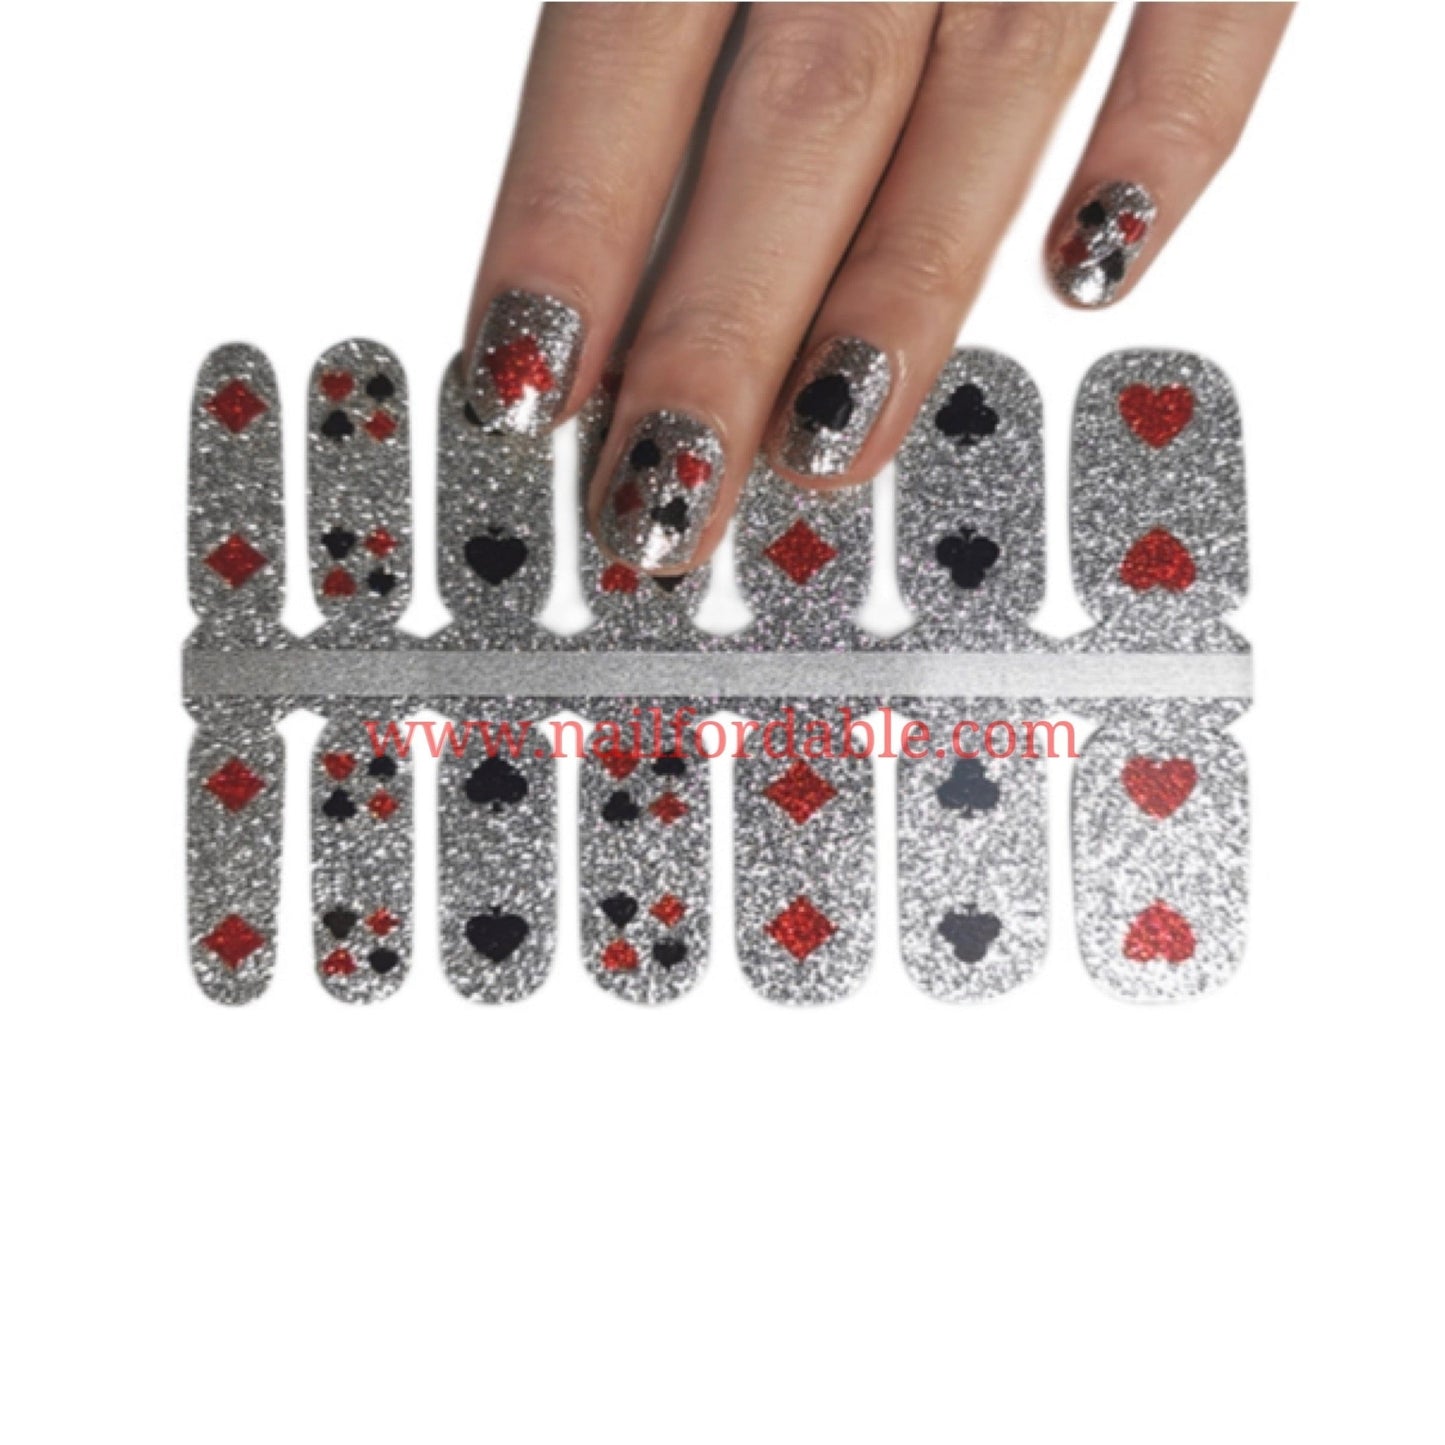 Poker Nail Wraps | Semi Cured Gel Wraps | Gel Nail Wraps |Nail Polish | Nail Stickers